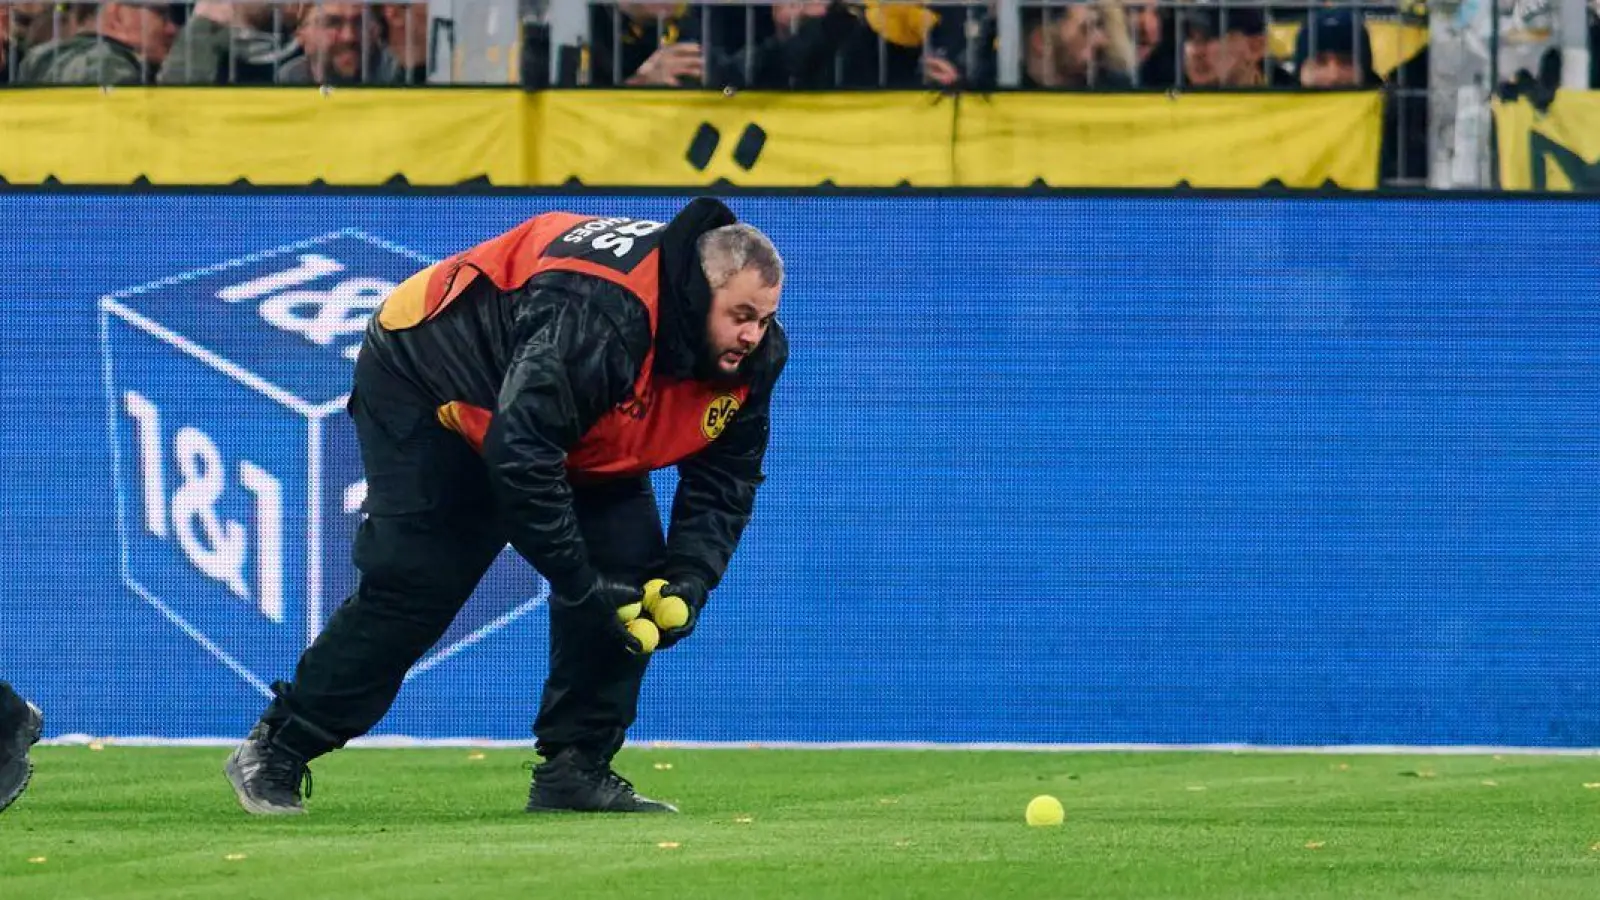 Stadionmitarbeiter sammeln Tennisbälle ein, die Fans auf das Spielfeld geworfen haben, um gegen Investoren in der DFL zu protestieren. (Foto: Bernd Thissen/dpa)